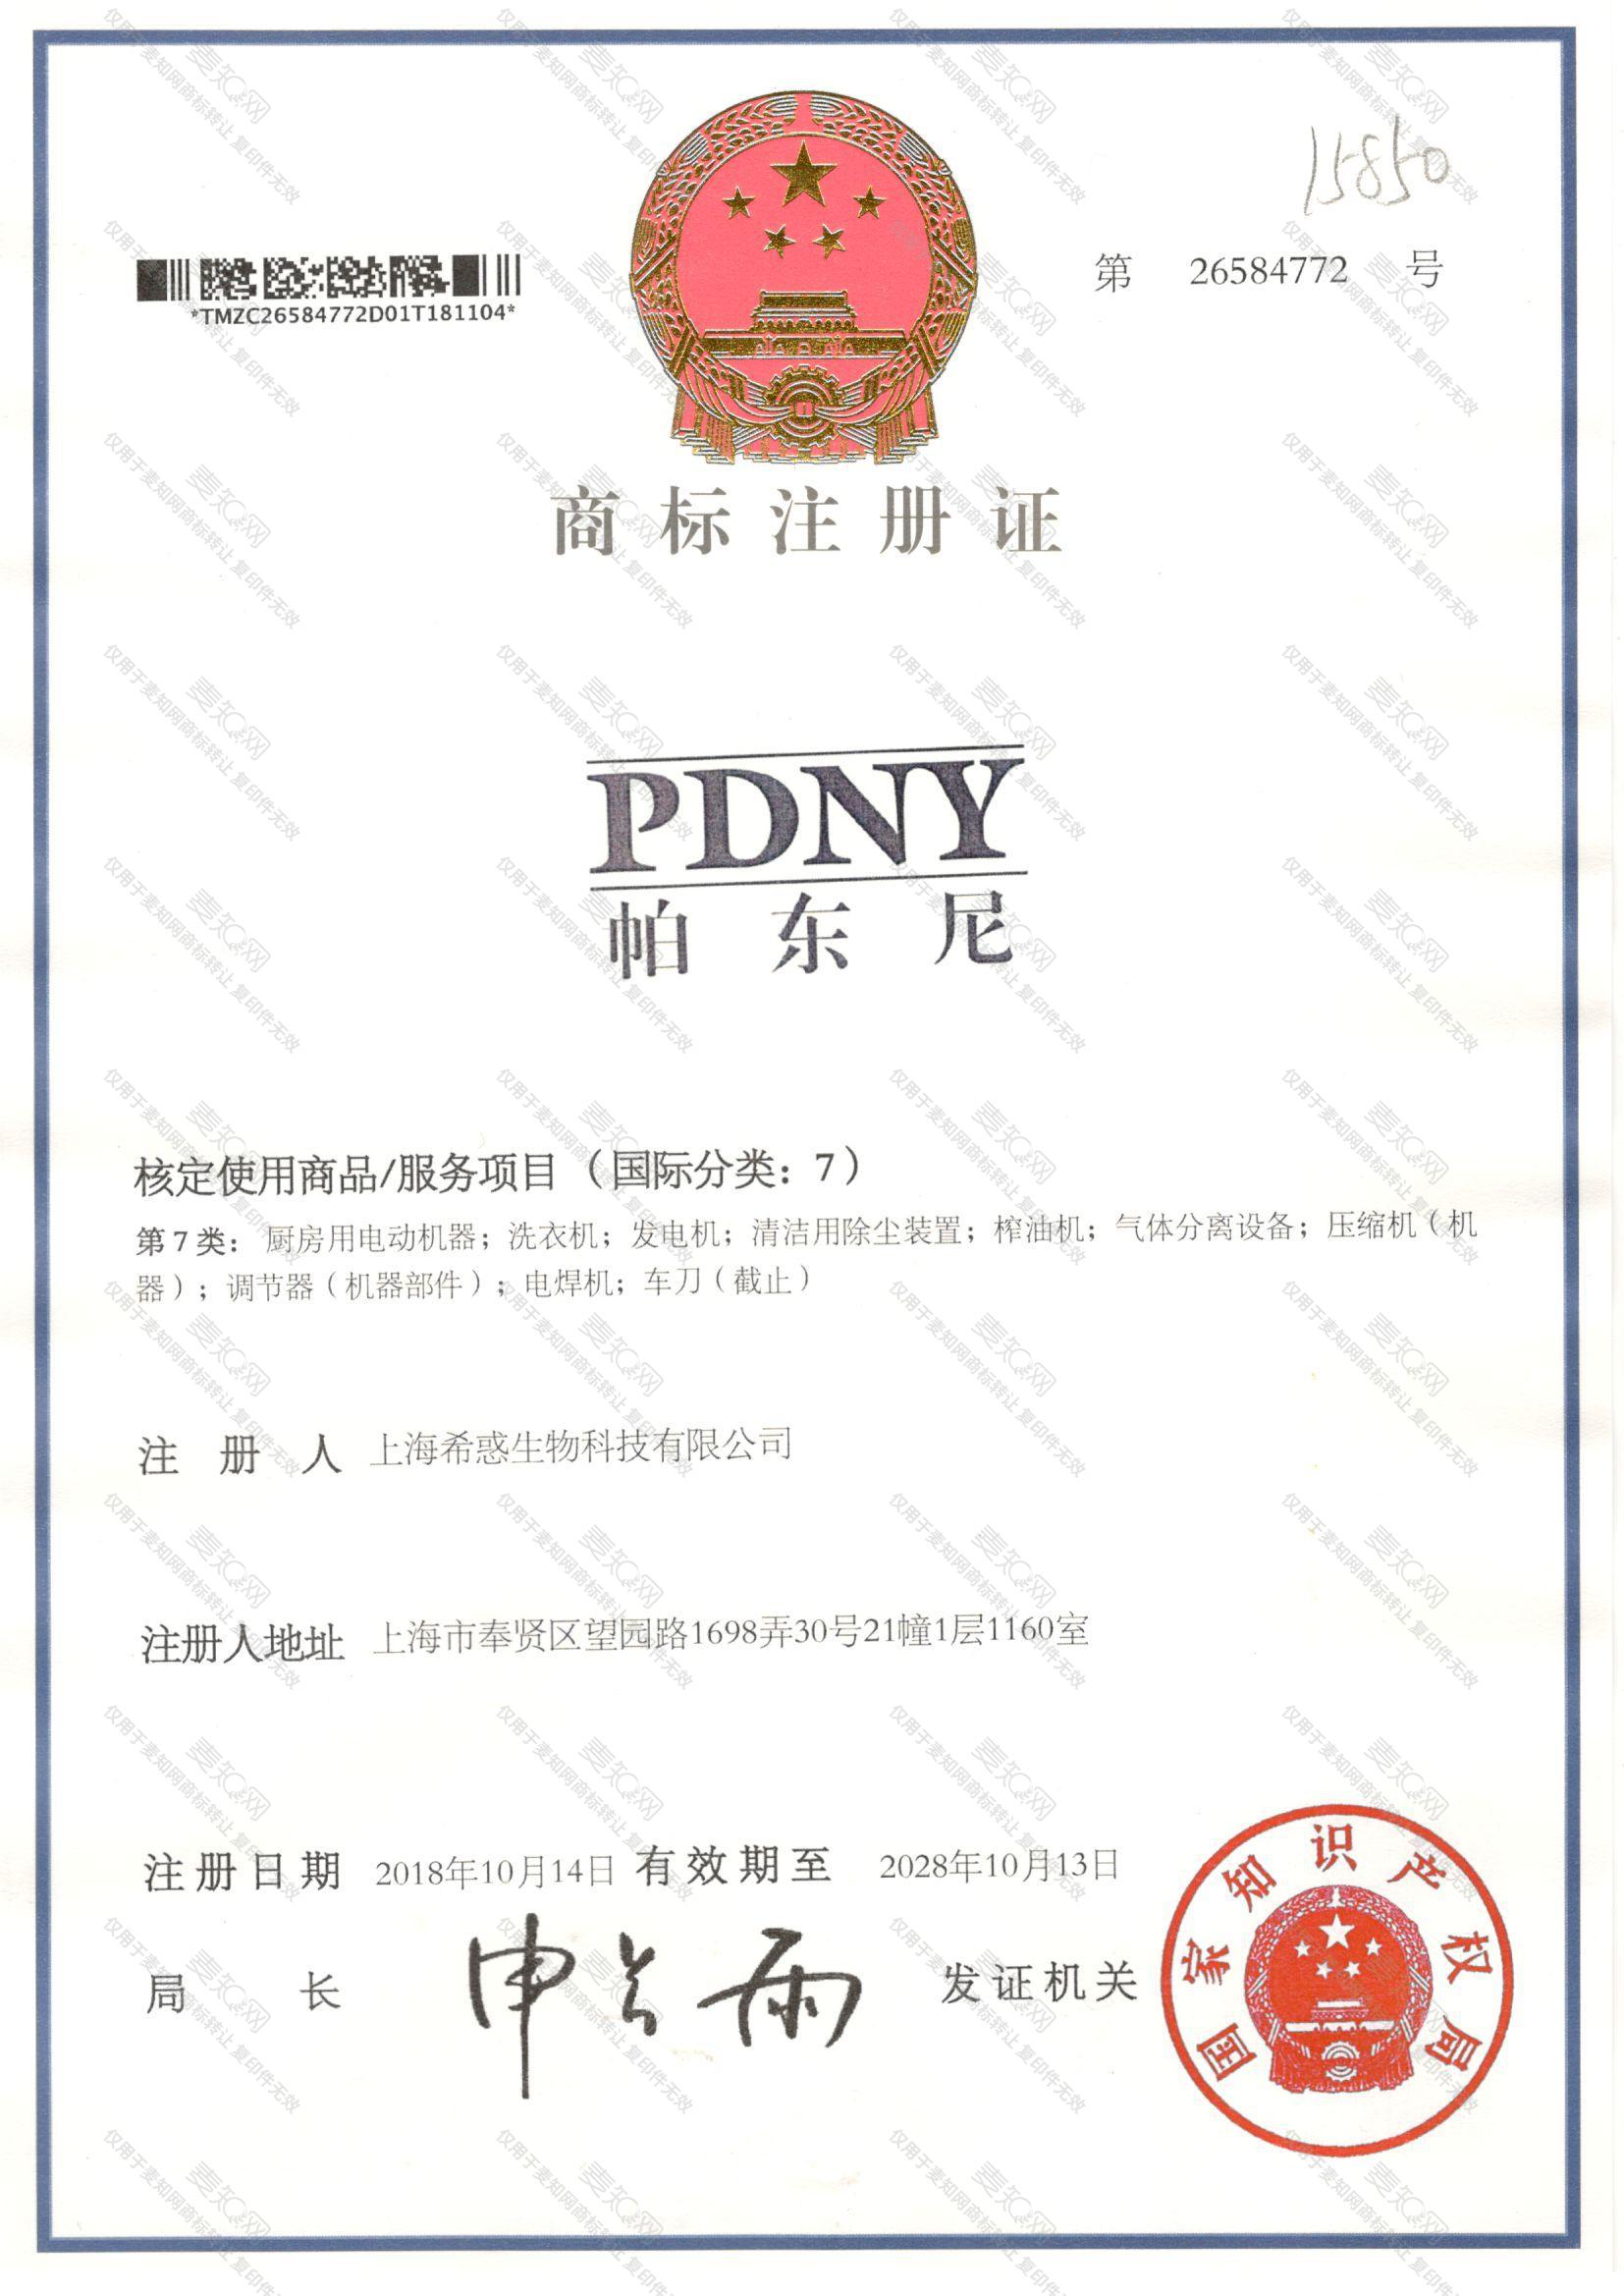 帕东尼 PDNY注册证